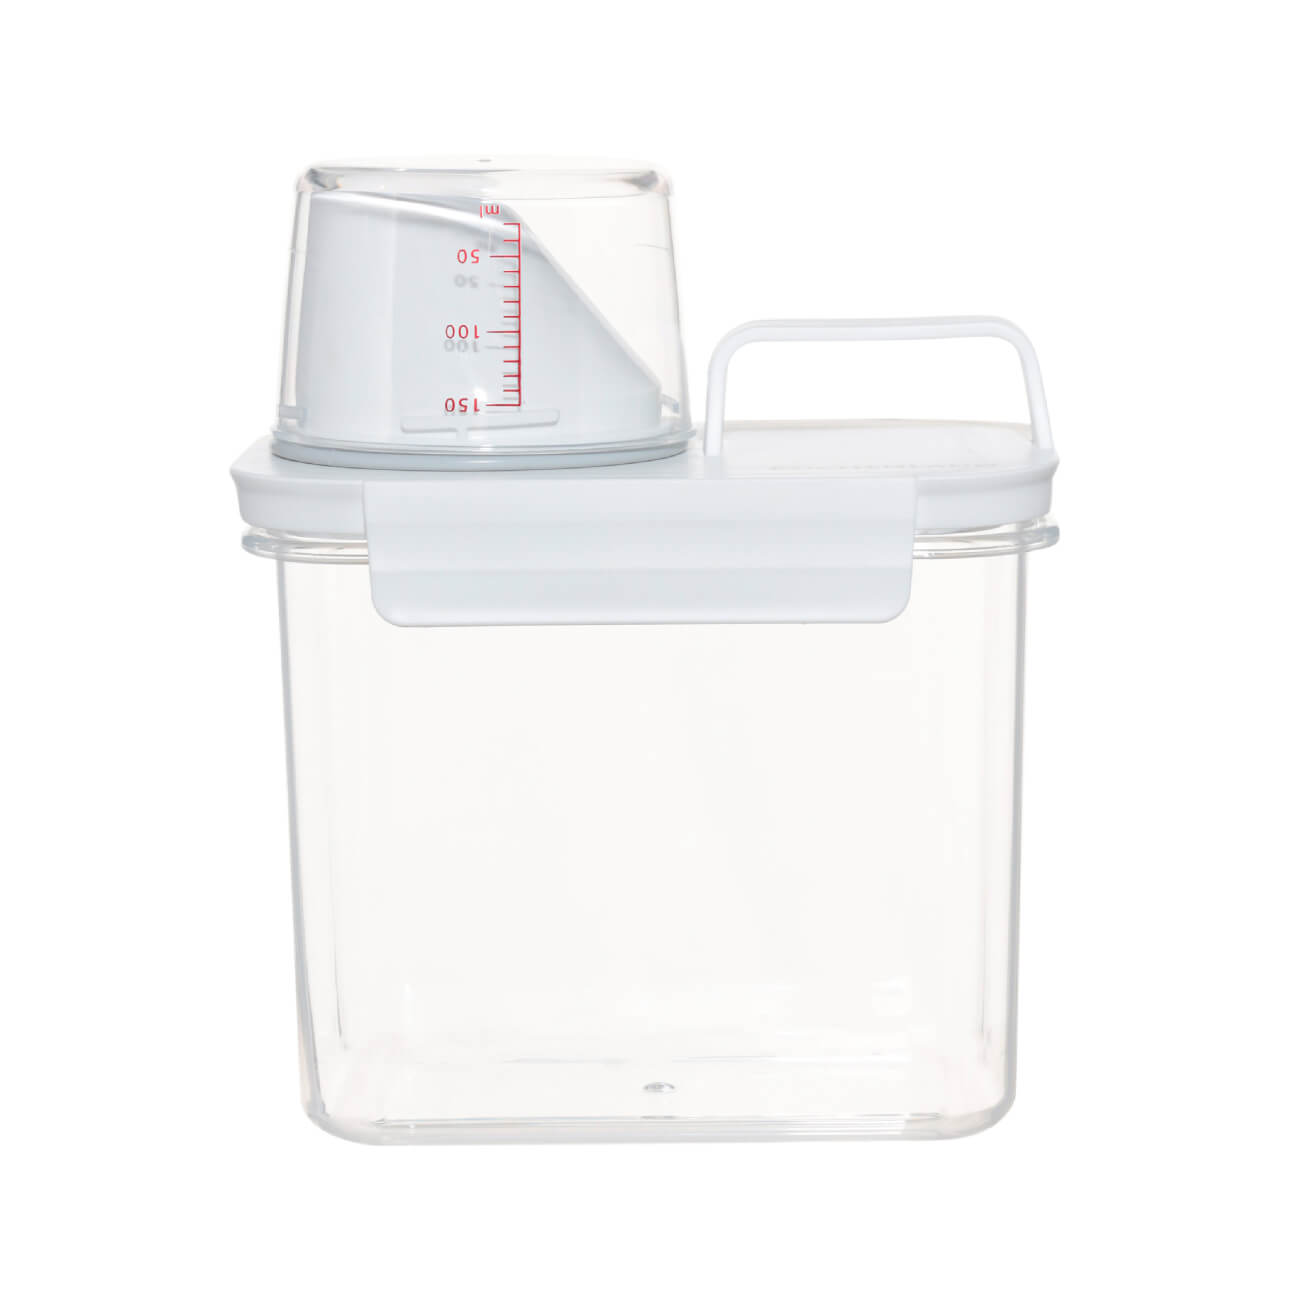 контейнер для стирального порошка birdhouse органайзер для моющих средств 1 шт Контейнер для стирального порошка или геля, 1,1 л, с мерником, пластик, белый, Compact